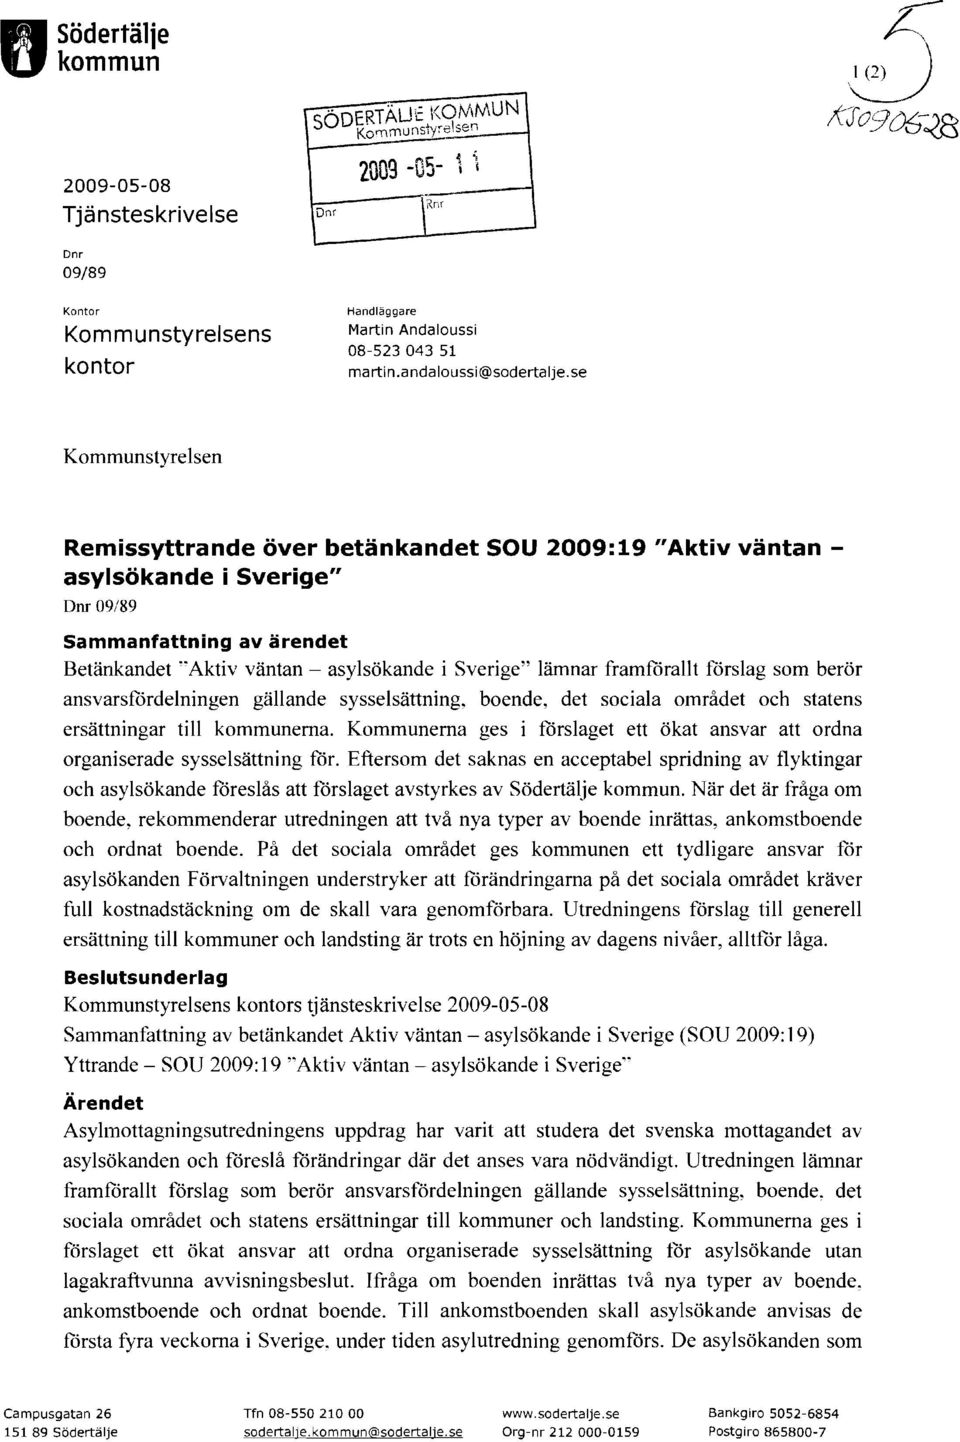 se Kommunstyrelsen Remissyttrande över betänkandet SOU 2009:19 "Aktiv väntan asylsökande i Sverige" Dm 09/89 Sammanfattning av ärendet Betänkandet "Aktiv väntan - asylsökande i Sverige" lämnar